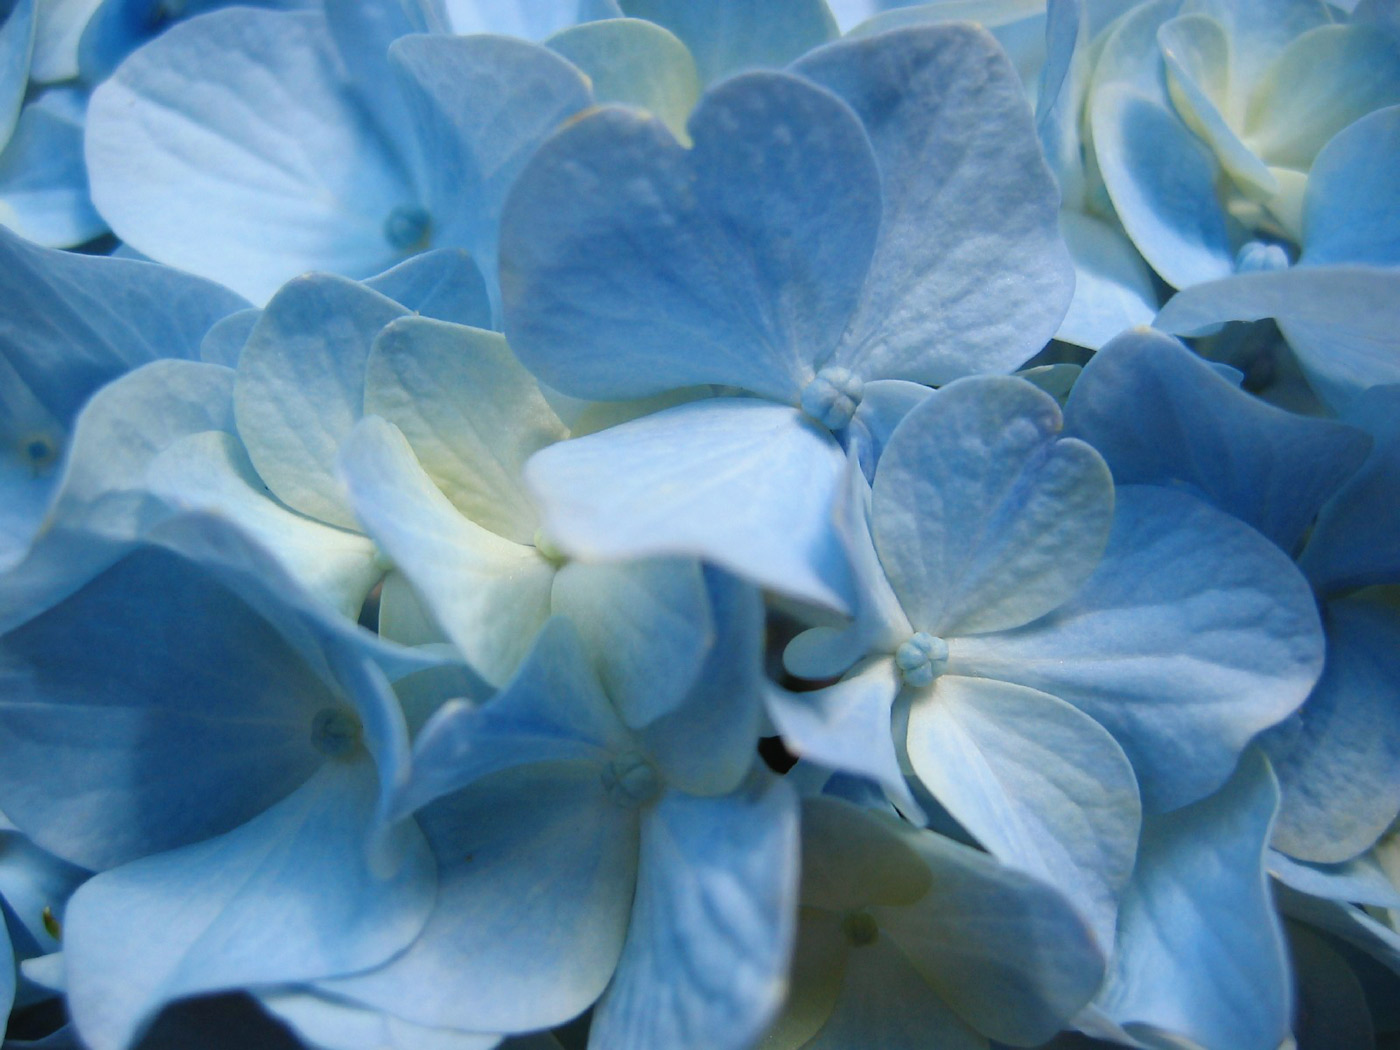 Blue Hydrangea Flowers